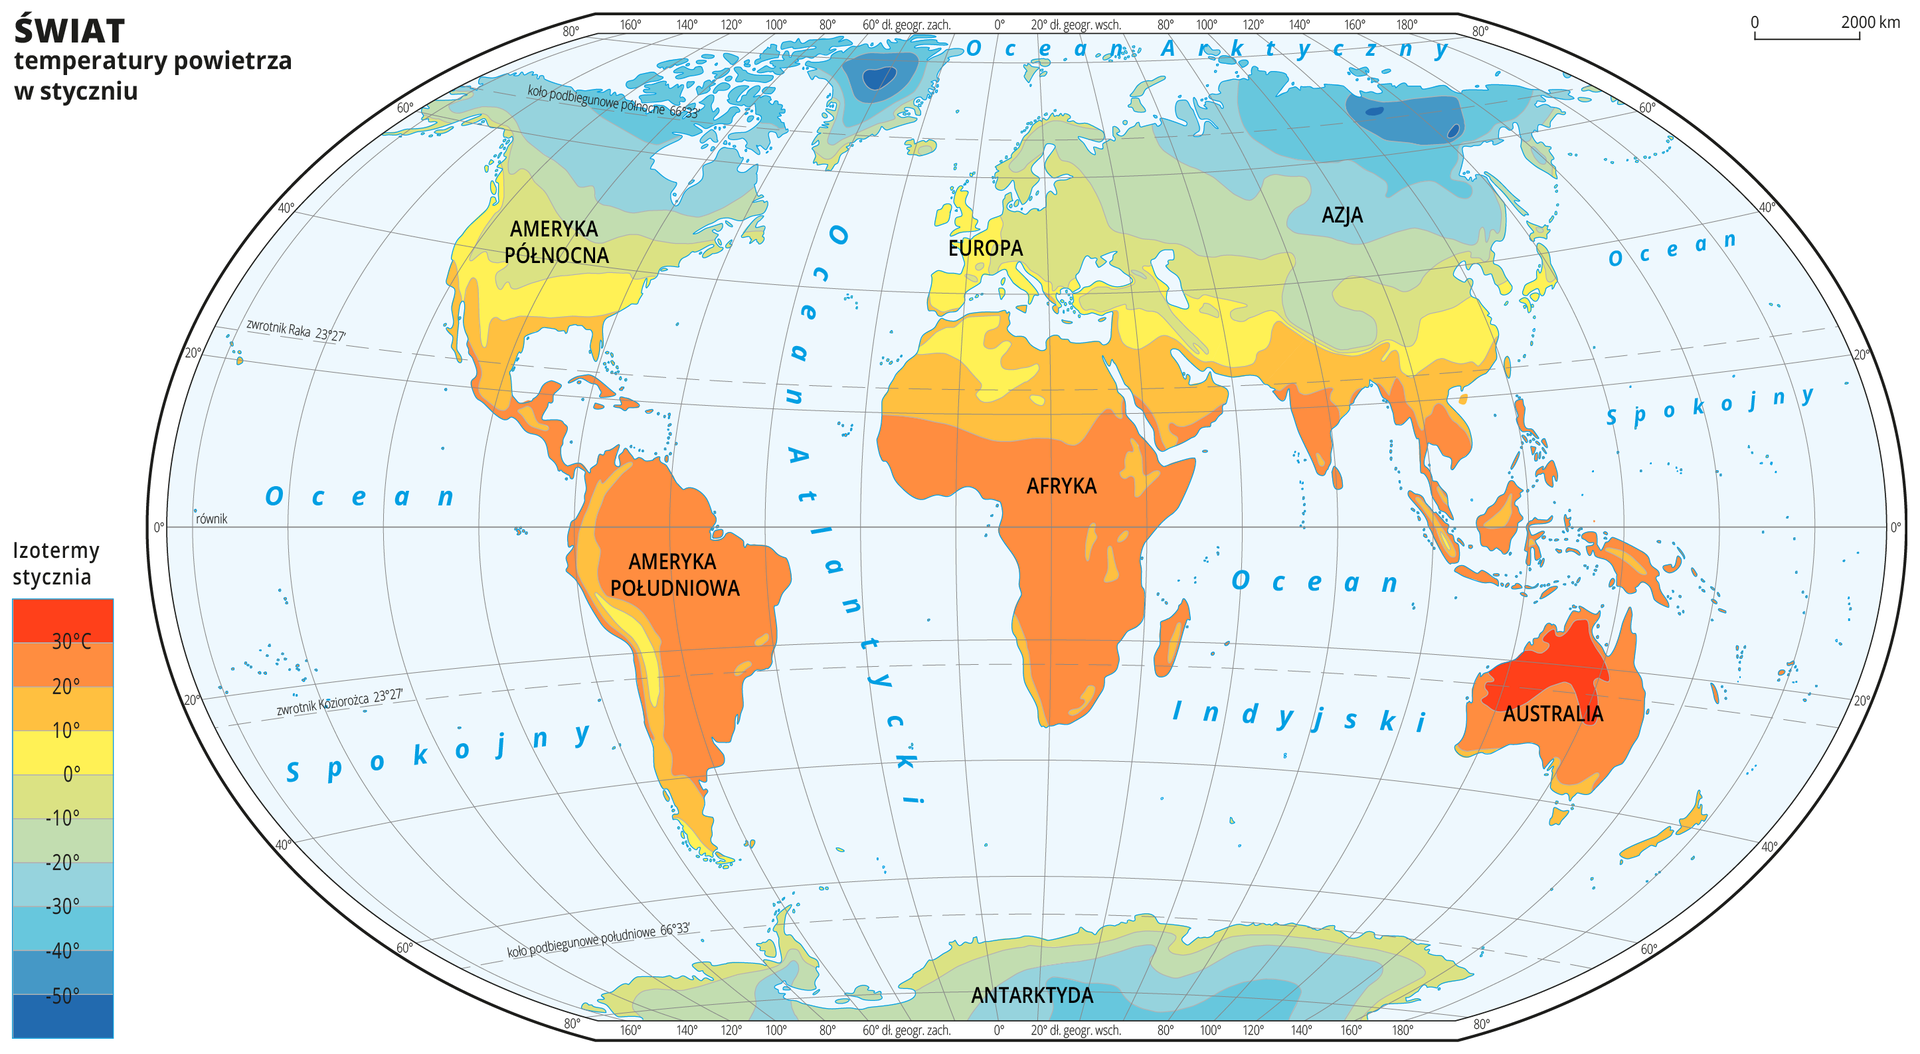 Ilustracja przedstawia mapę świata. Opisano kontynenty. Wody zaznaczono kolorem niebieskim. Opisano oceany. Na mapie w obrębie lądów kolorami zaznaczono średnie miesięczne temperatury powietrza w styczniu. Centralną część mapy pokrywa kolor pomarańczowy i żółty. Na północy i południu kolor przechodzi w zielony do niebieskiego. Mapa pokryta jest równoleżnikami i południkami. Dookoła mapy w białej ramce opisano współrzędne geograficzne co dwadzieścia stopni. Po lewej stronie mapy w legendzie umieszczono prostokątny pionowy pasek. Pasek podzielono na dziesięć części. U góry – ciemnopomarańczowy, dalej pomarańczowy, środek żółty przechodzący w zielony, na dole niebieski do ciemnoniebieskiego. Każda część paska obrazuje dziesięciostopniowy przedział średniej miesięcznej temperatury powietrza w styczniu w różnych regionach świata. Ciemnopomarańczowy oznacza obszary najcieplejsze, ciemnoniebieski – najzimniejsze. Odcieniami koloru pomarańczowego zaznaczono obszary o średniej miesięcznej temperaturze powietrza w styczniu powyżej dziesięciu stopni Celsjusza, kolorem żółtym – od zera do dziesięciu stopni Celsjusza. Odcieniami koloru zielonego i niebieskiego zaznaczono obszary o średniej miesięcznej temperaturze powietrza w styczniu poniżej zera. Obszary o najniższej średniej temperaturze powietrza w styczniu – poniżej pięćdziesiąt stopni Celsjusza znajdują się na północy Azji i na Grenlandii. Obszary oznaczone kolorem ciemnopomarańczowym, na których średnia temperatura powietrza w styczniu wynosi powyżej trzydziestu stopni Celsjusza znajdują się w Australii.